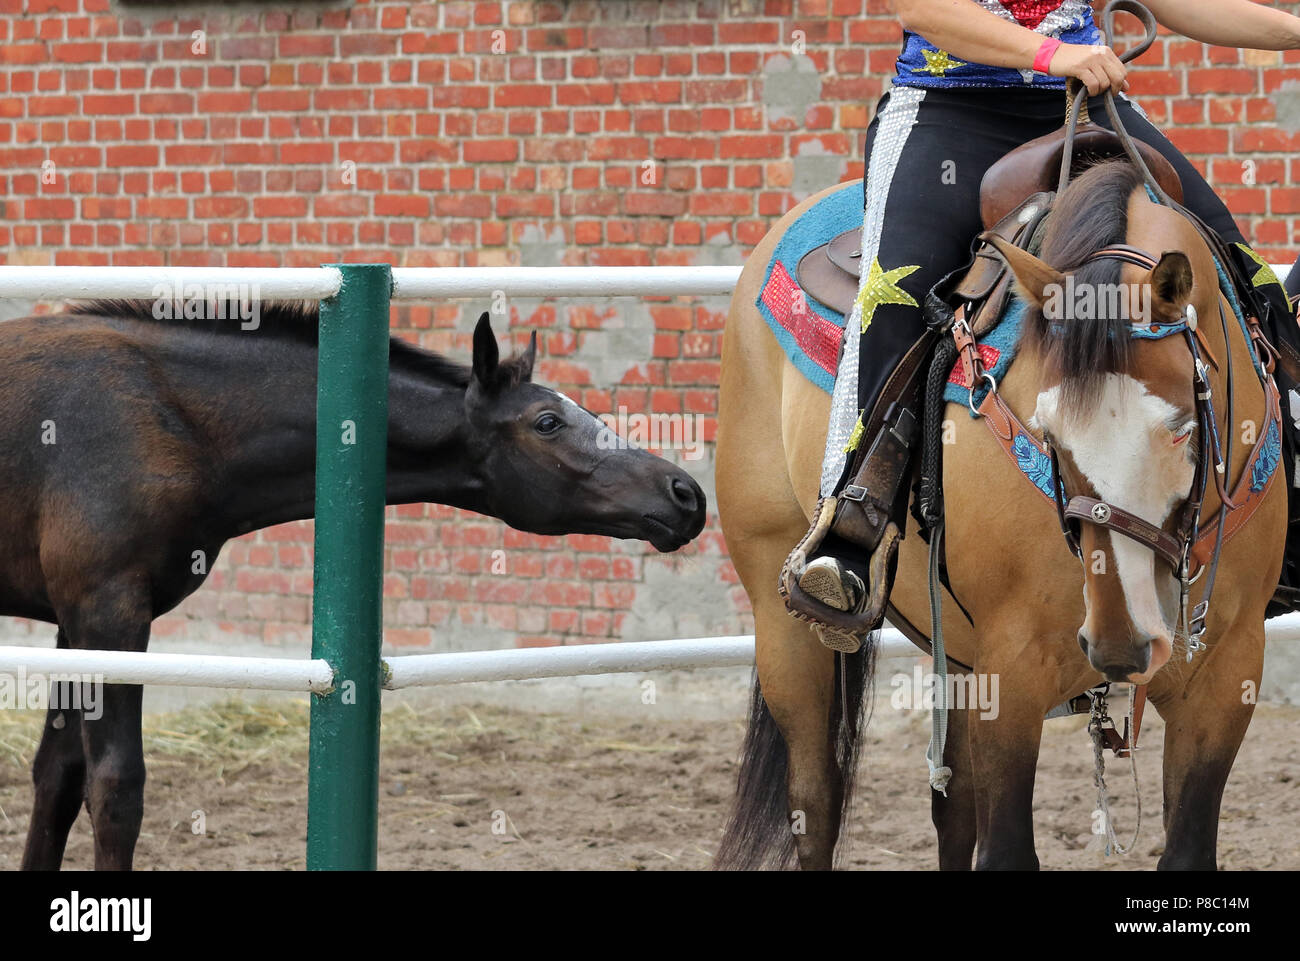 Gestuet Ganschow, foal curiously sniffs a western horse Stock Photo